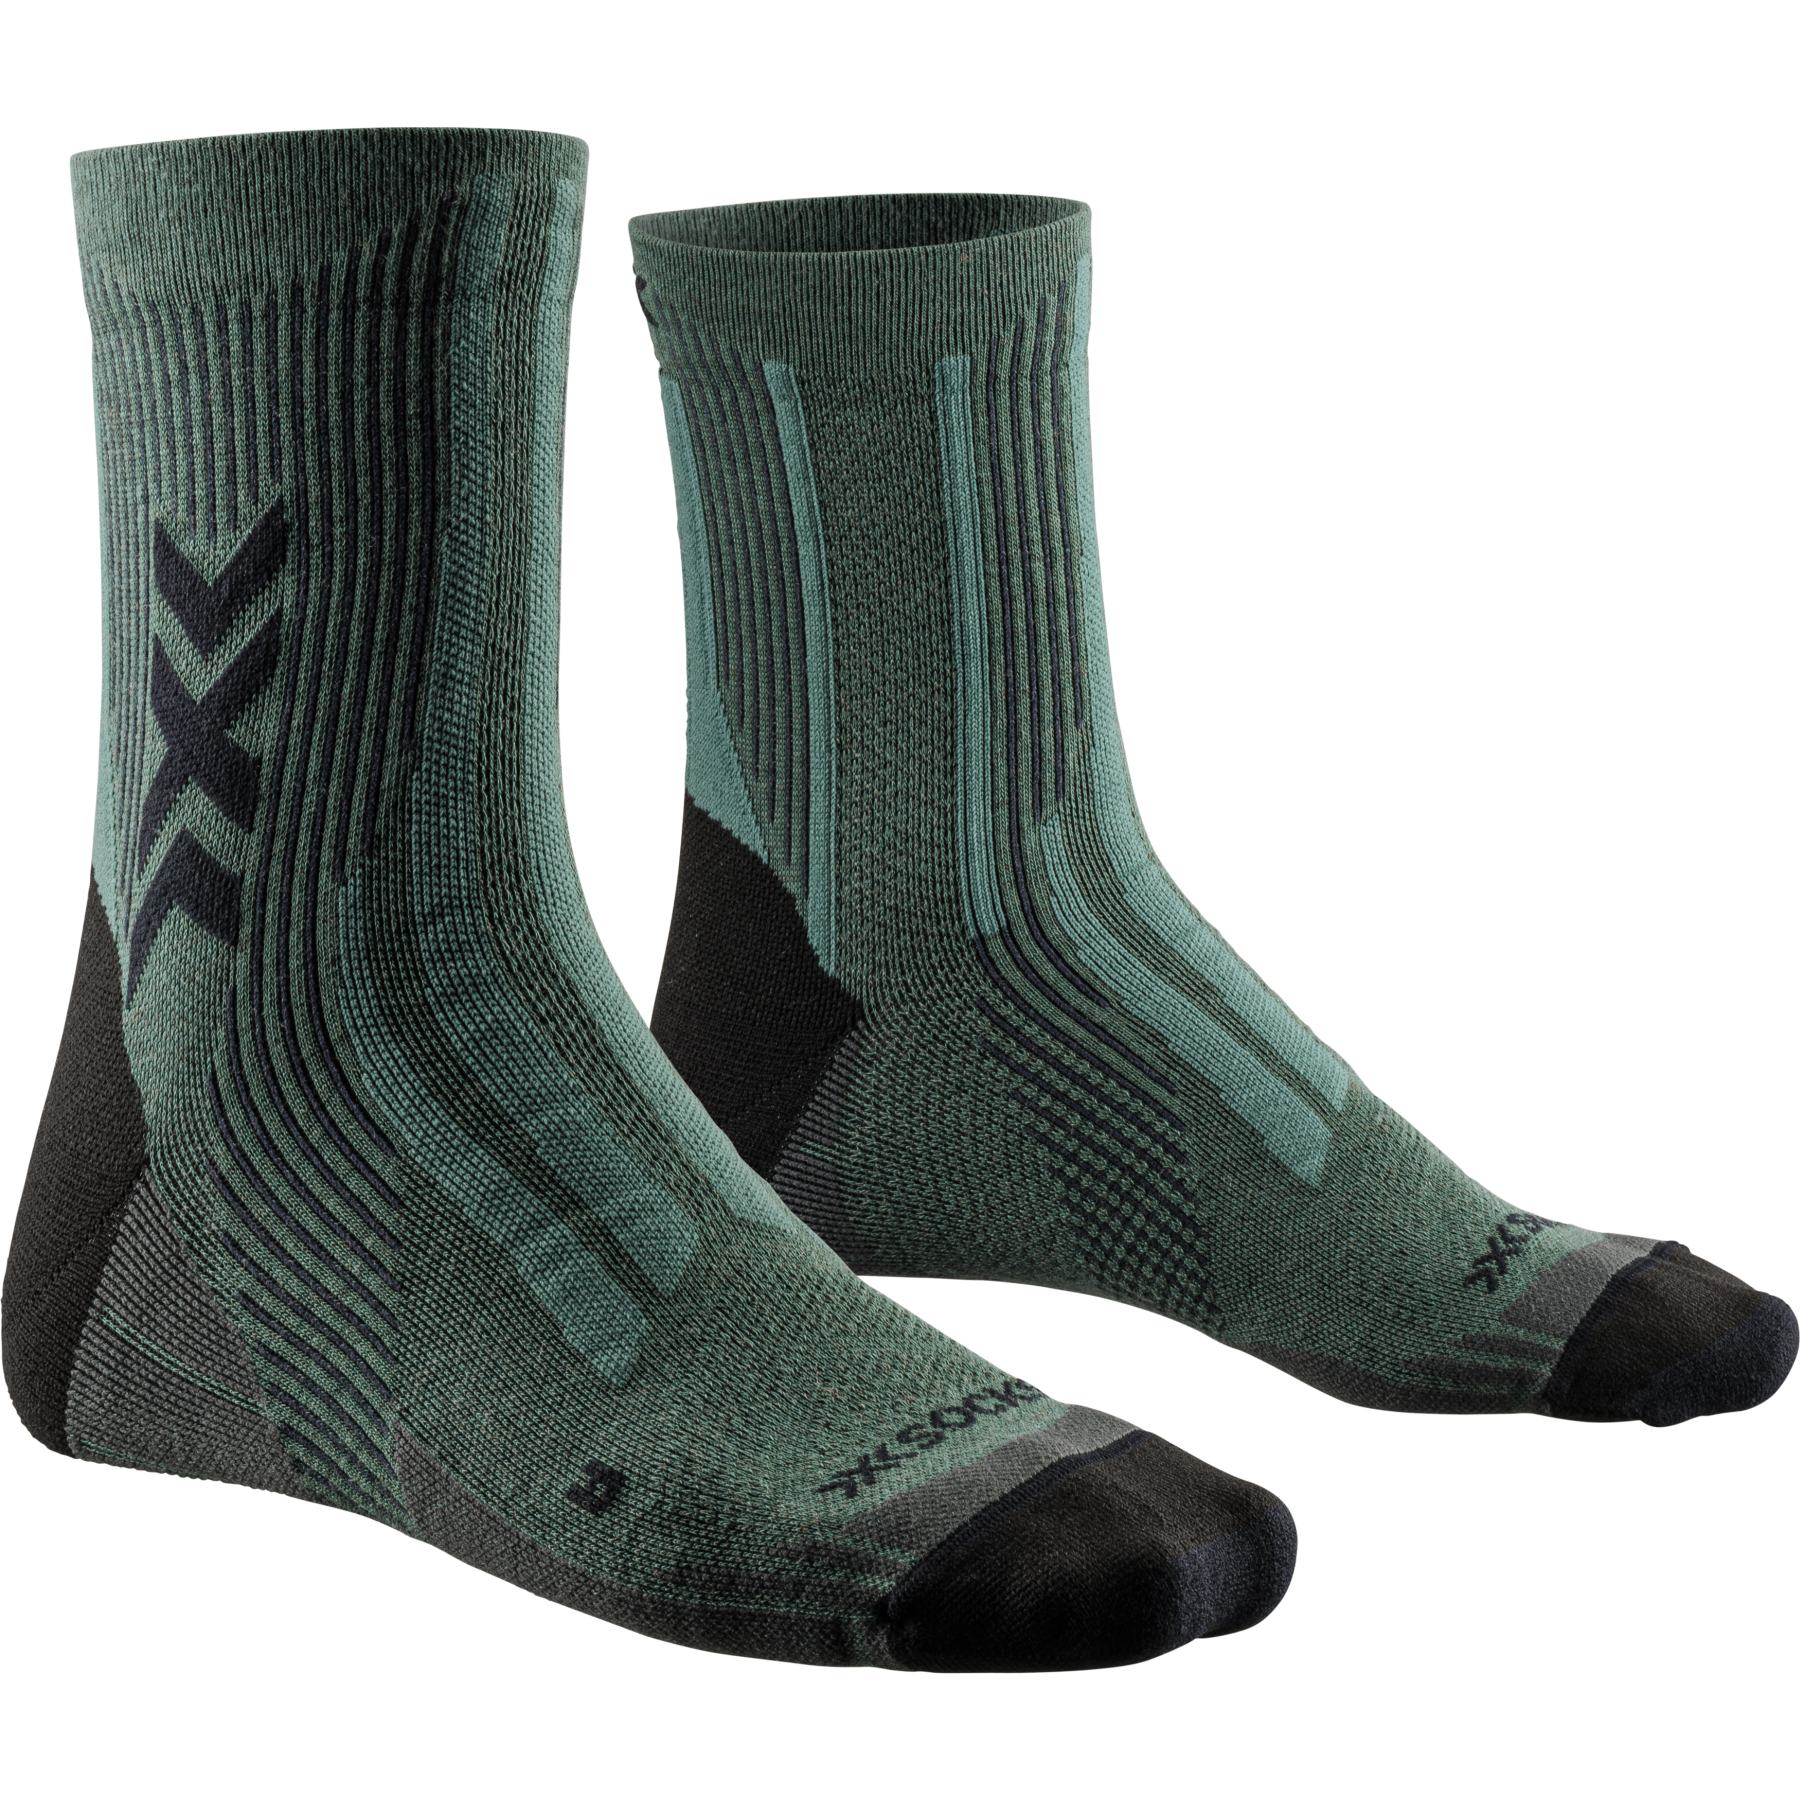 Produktbild von X-Socks Hike Perform Natural Ankle Socken - dark sage/black